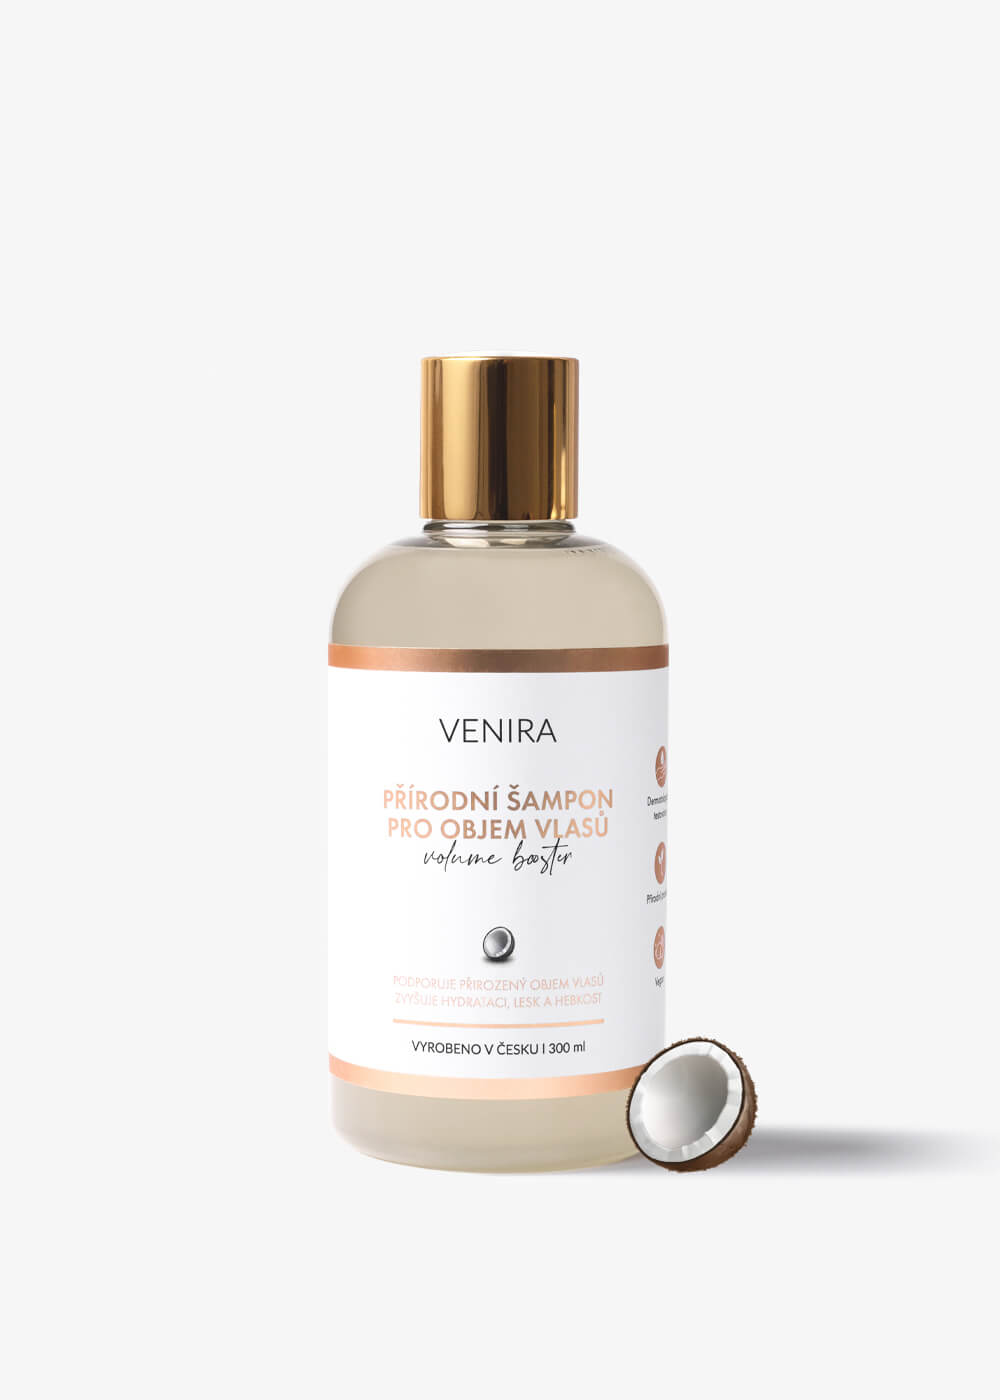 VENIRA prírodný šampón pre objem vlasov - VOLUME BOOSTER, kokos, 300 ml kokos, 300 ml